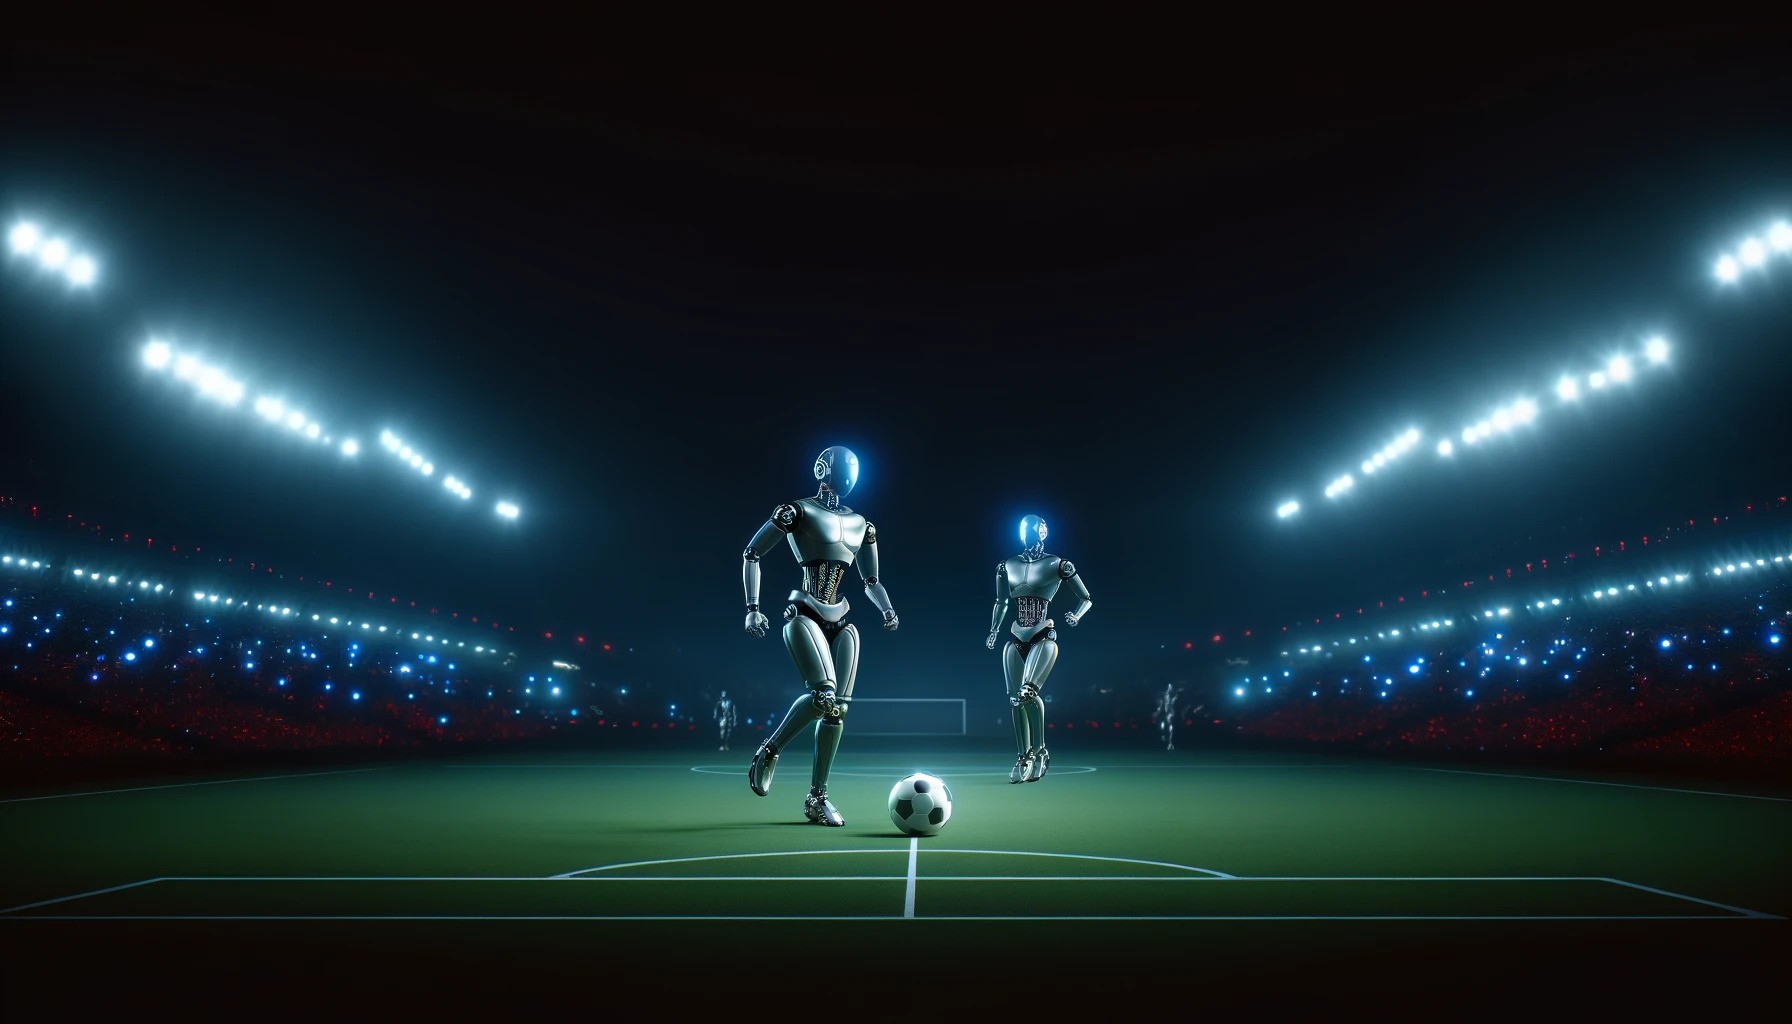 DeepMind traint robotvoetballers die trappen, tackelen en verdedigen